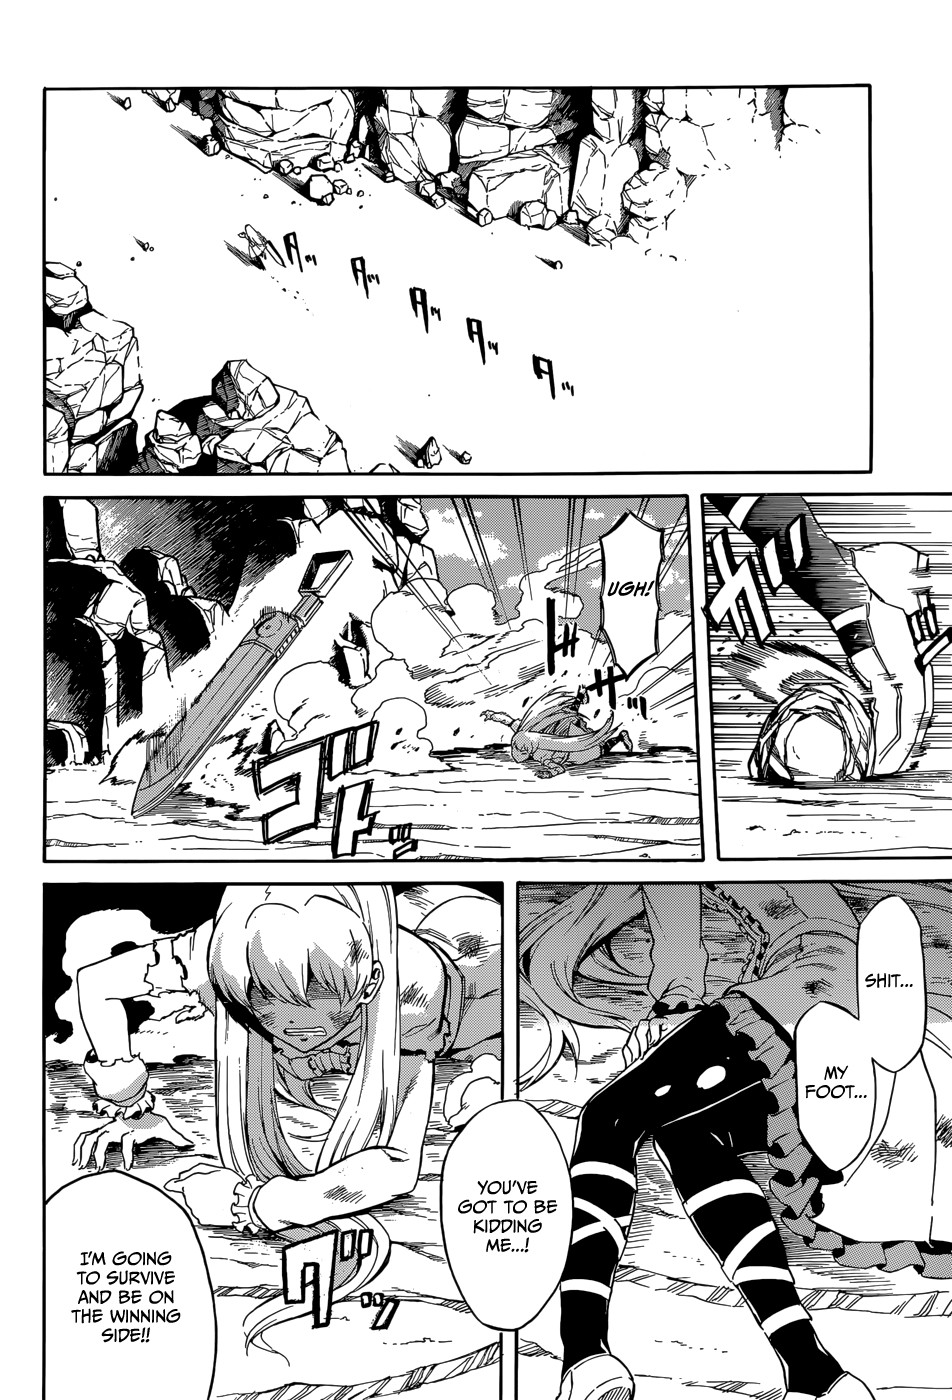 Akame ga Kill! chapter 38 page 16